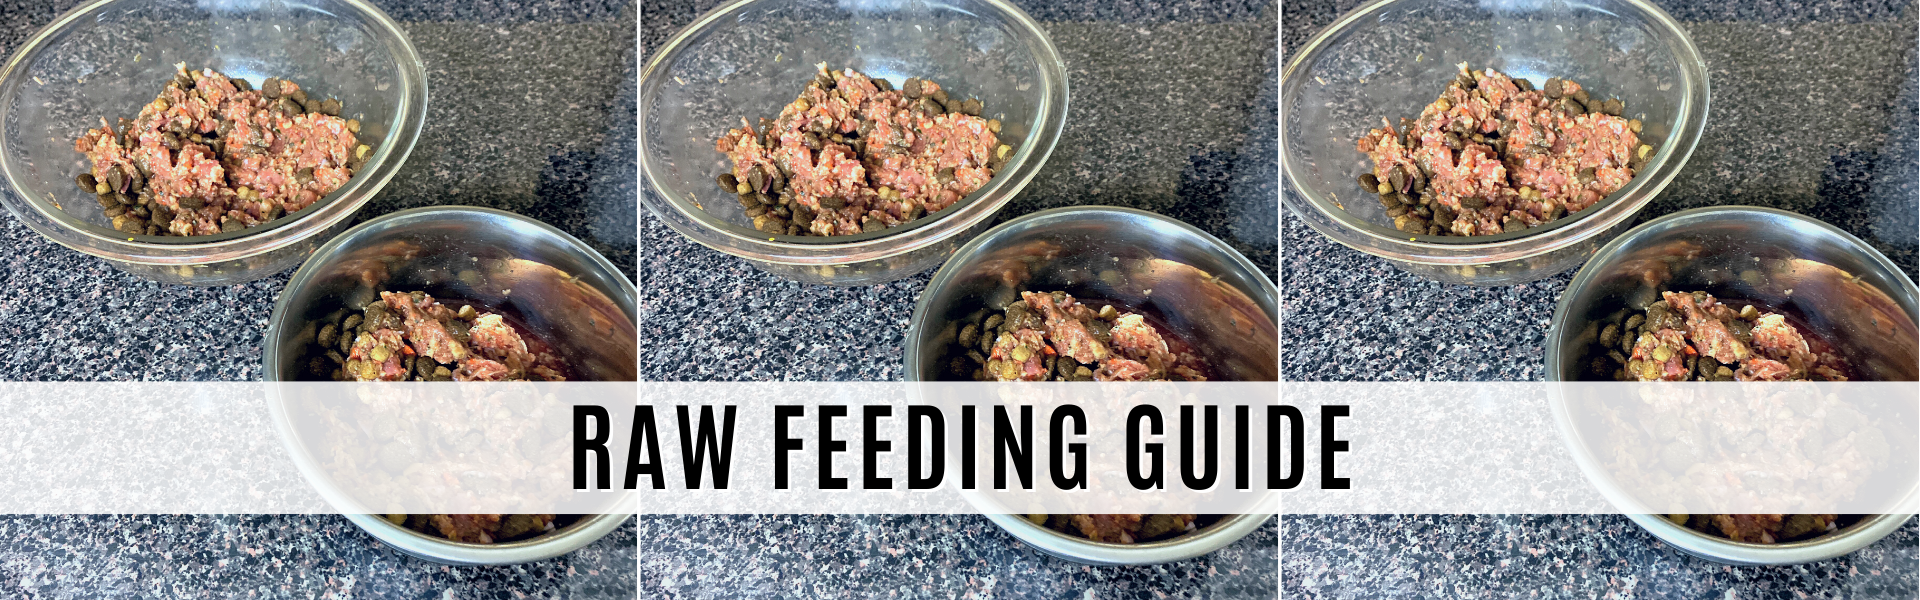 raw feeding guide